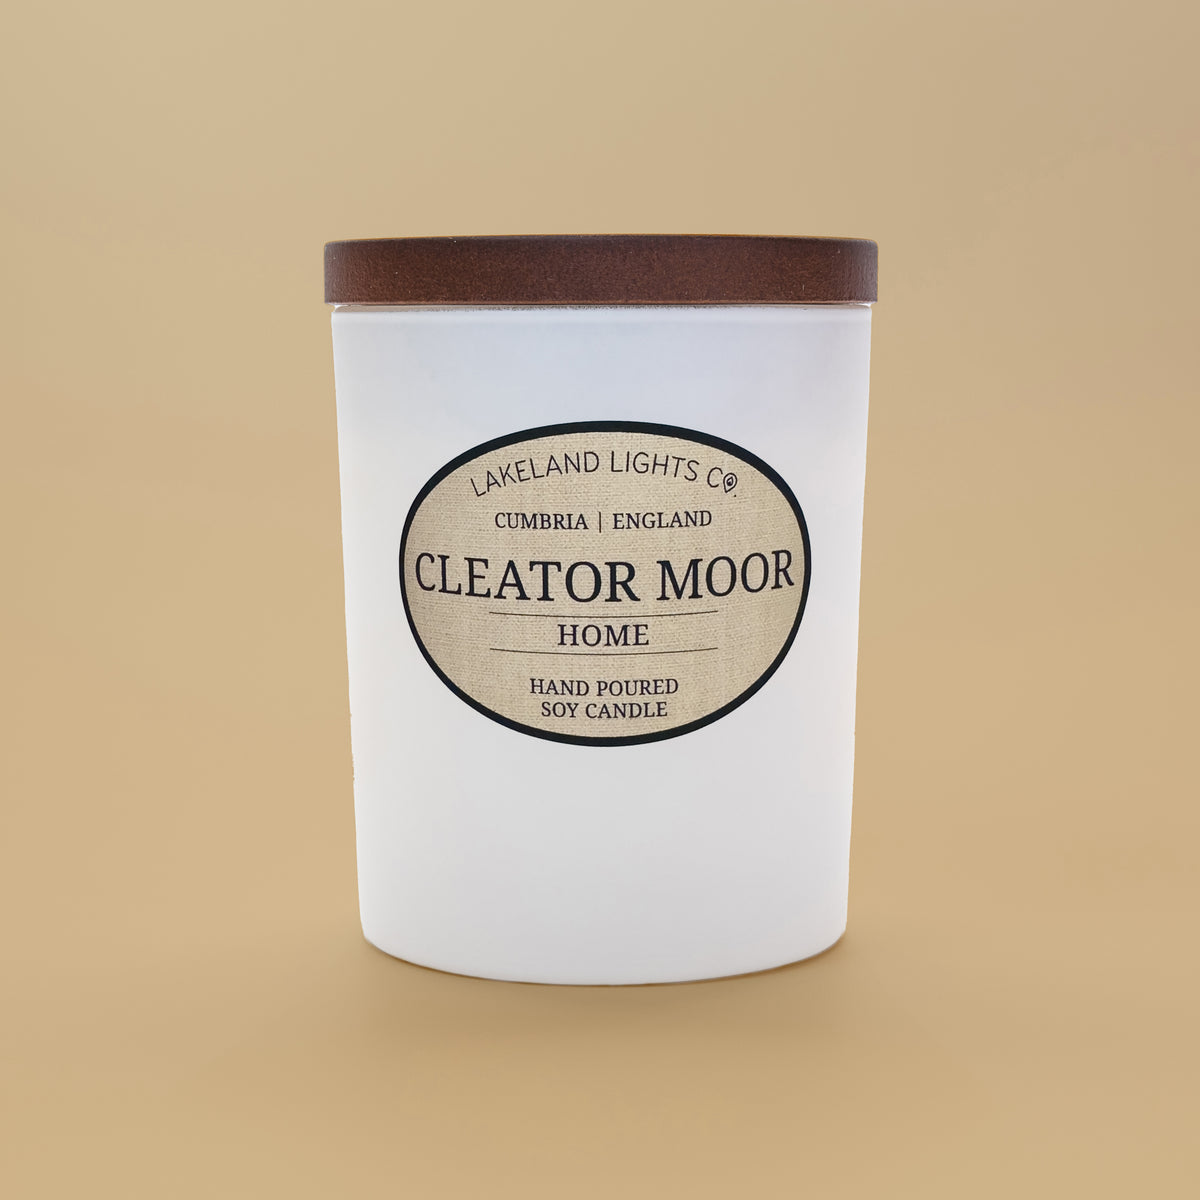 Cleator Moor